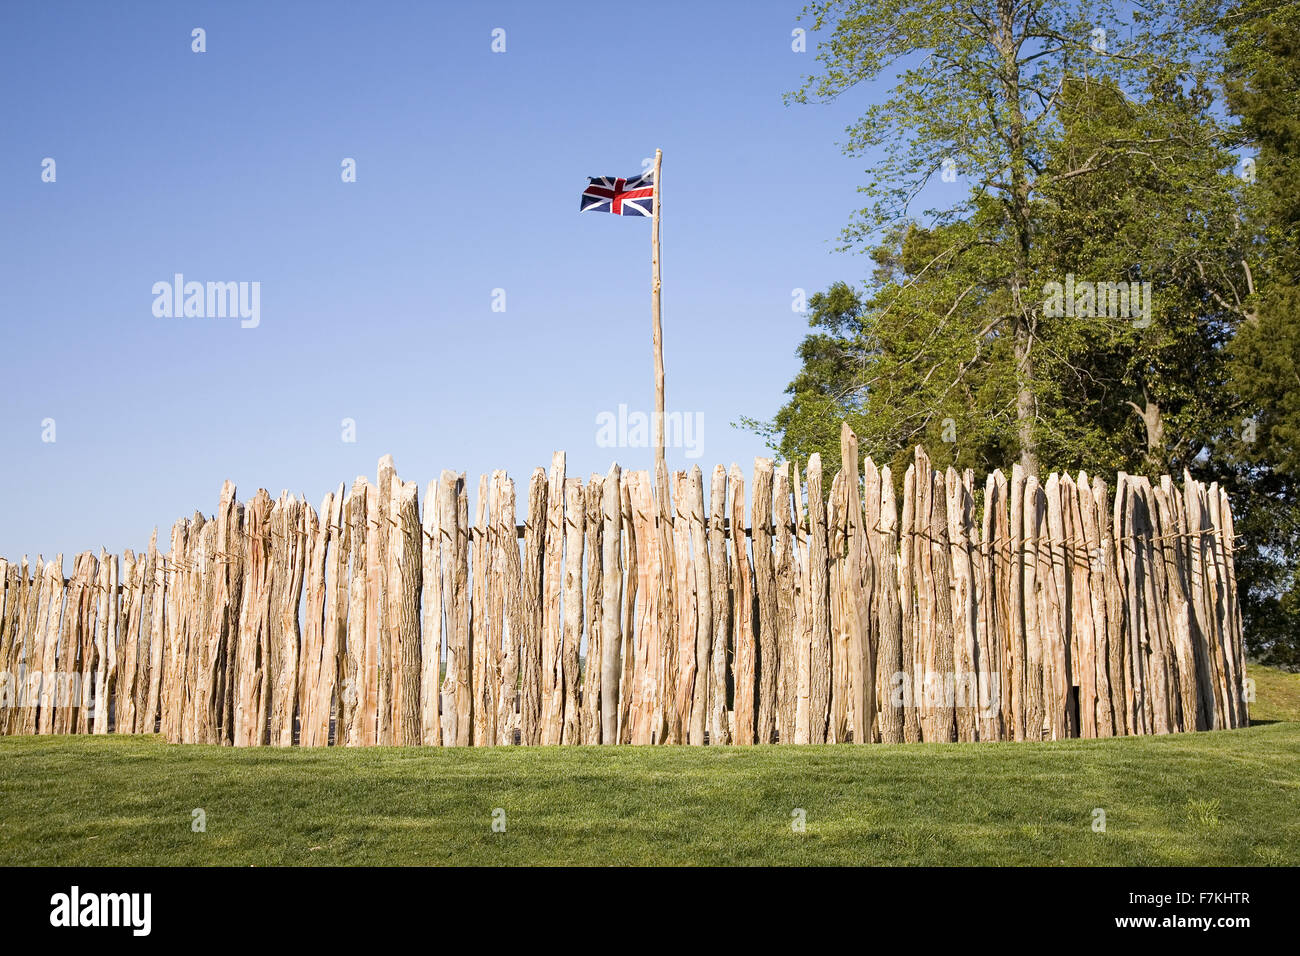 Erholung von James Fort Palisade auf Jamestown Island, Amerikas Geburtsort, Jamestown, die Website die erste dauerhafte englische Kolonie in Amerika, 13. Mai 1607. Foto aufgenommen am 13.05.2007 auf den 400. Jahrestag. Stockfoto